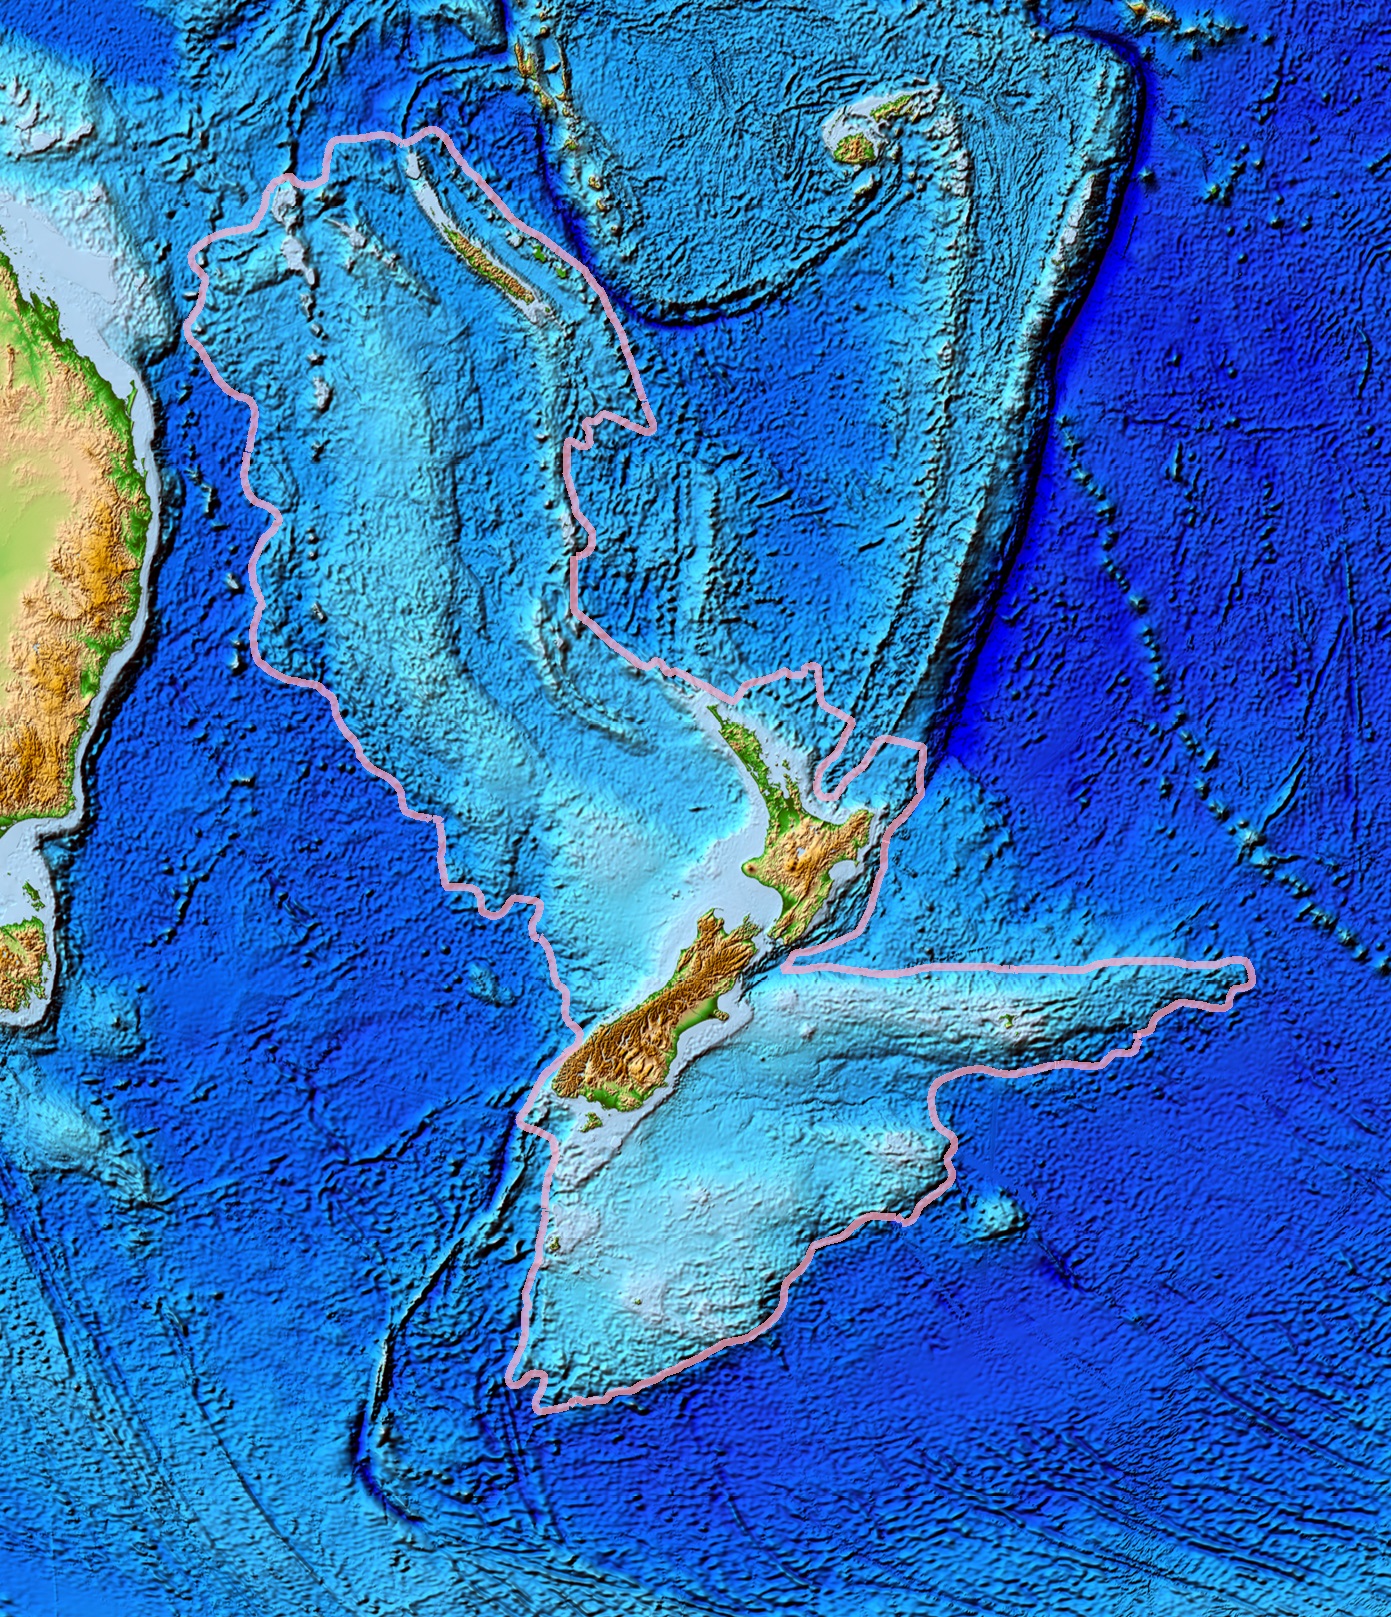 枠線がジーランディアの範囲、中央に浮かぶのがニュージーランド